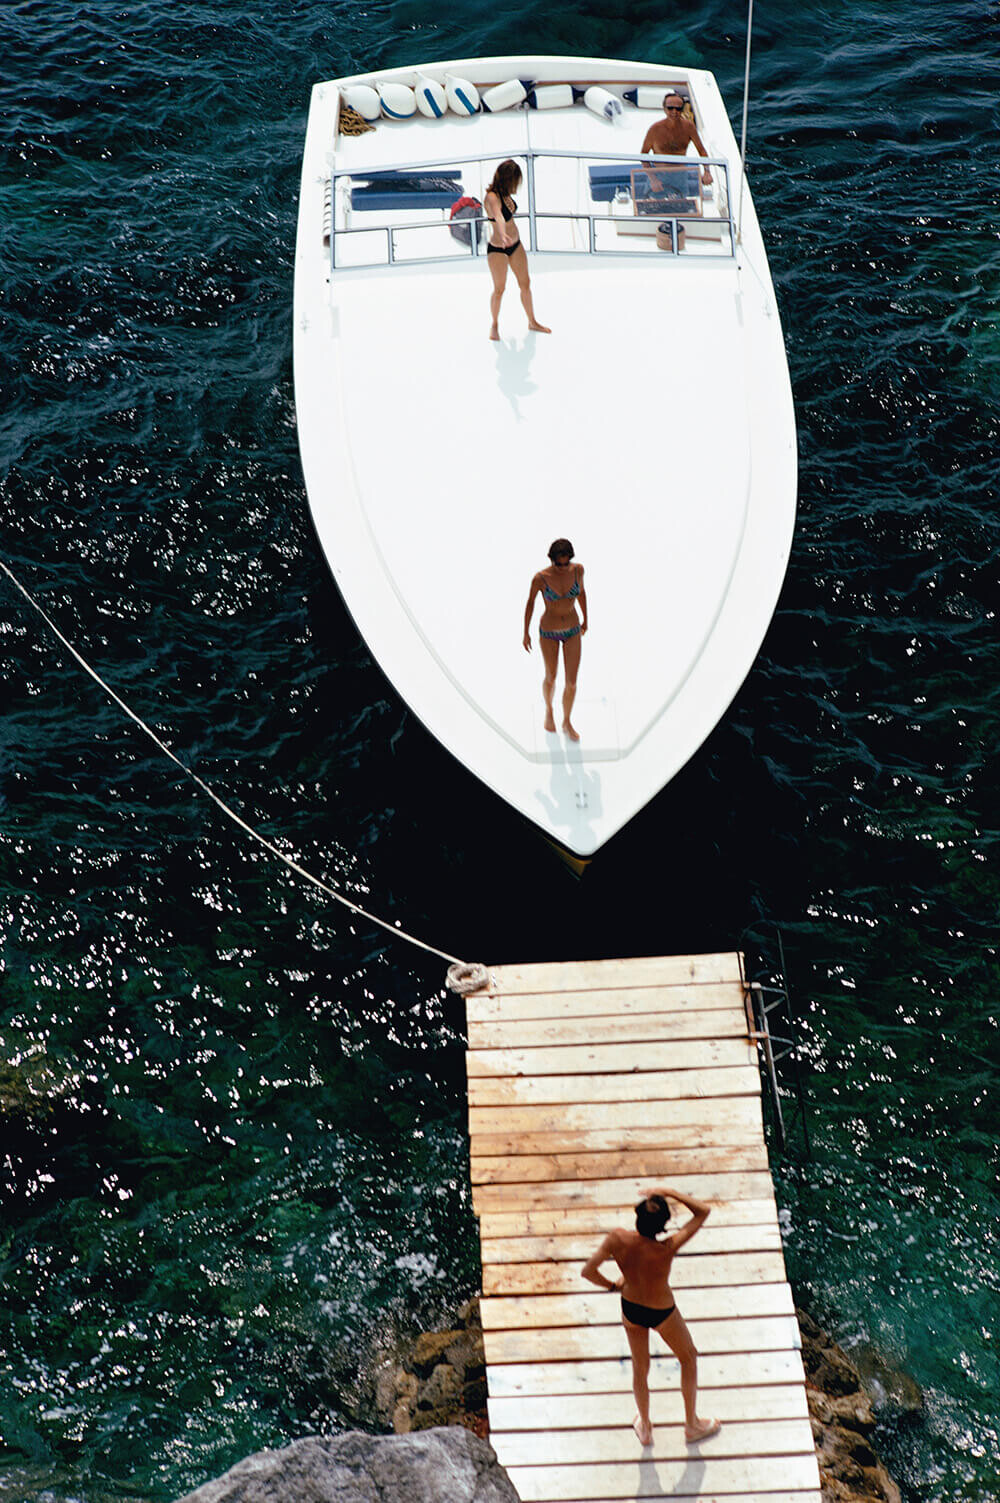 Моторная лодка у частного причала Hotel Il Pellicano в Порто-Эрколе, Италия, 1973. Фотограф Слим Ааронс